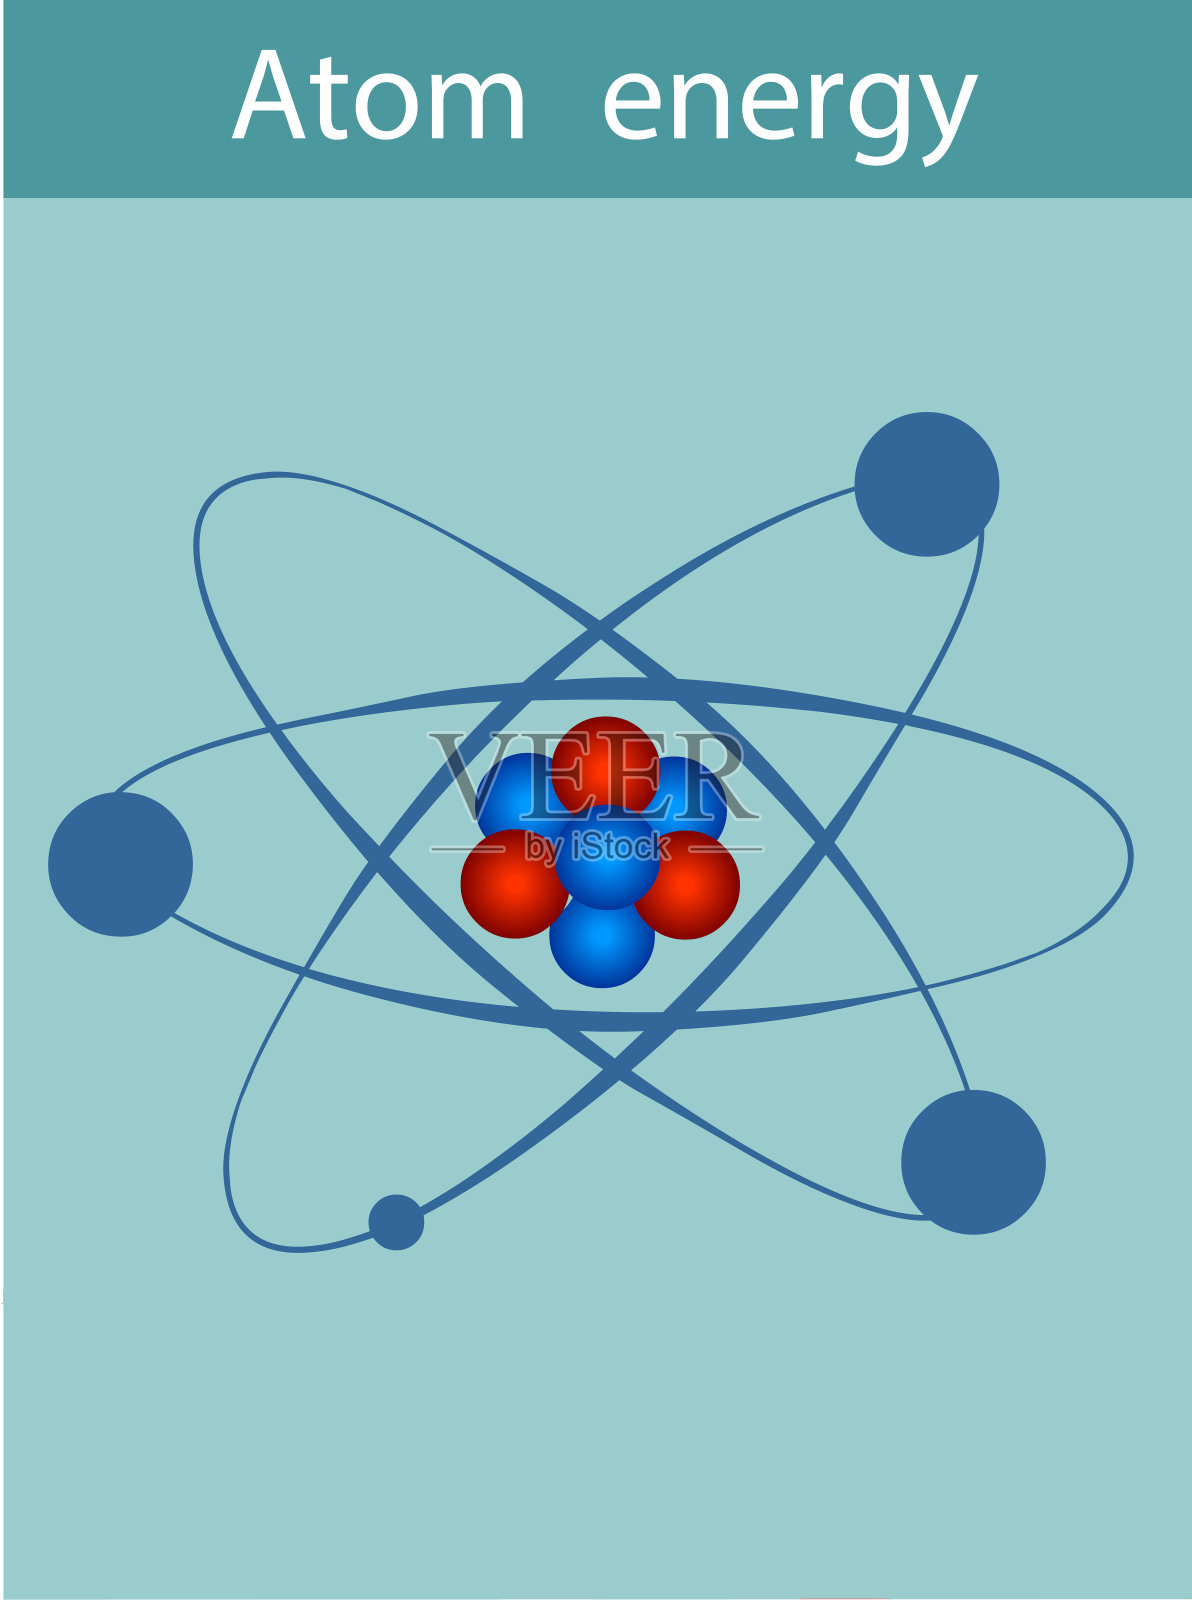 原子由原子核(中子和质子)和电子组成，它们围绕原子核运动。插画图片素材